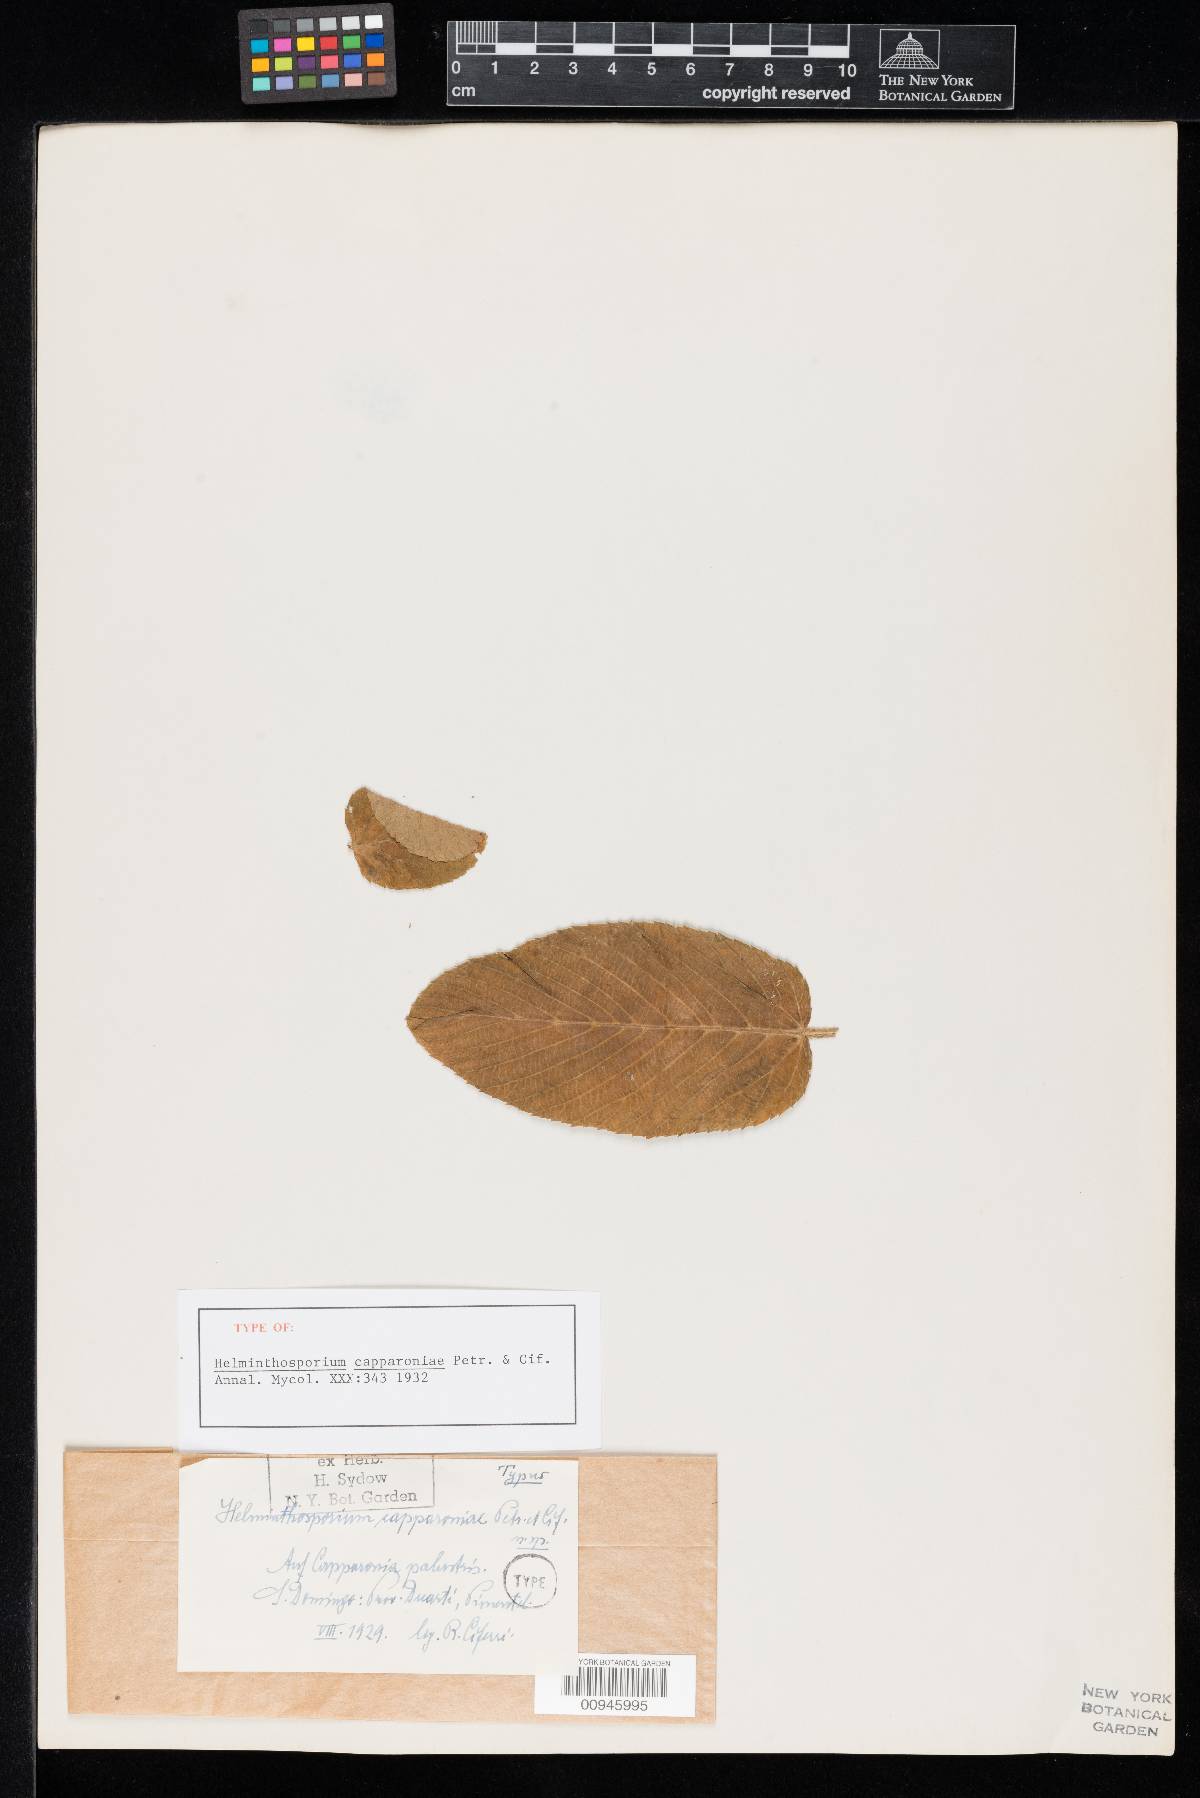 Helminthosporium capparoniae image